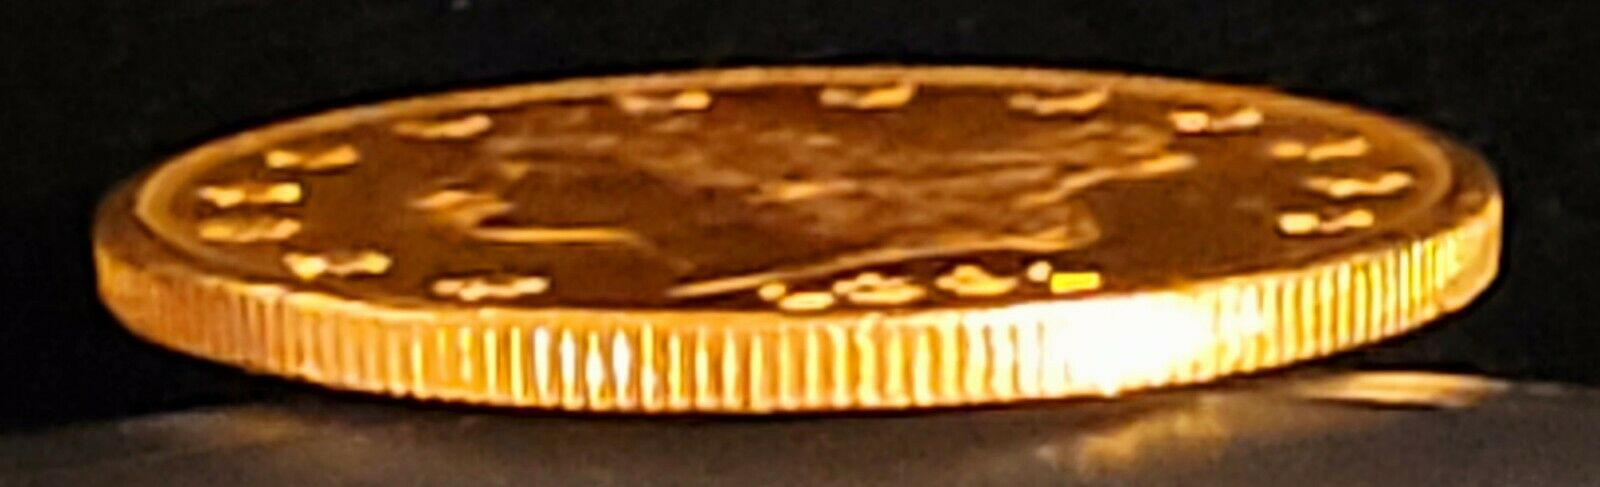 1891-s $20.00 Gold Us Liberty Head San Francsco Ungraded .9675oz Gold $20 Rare